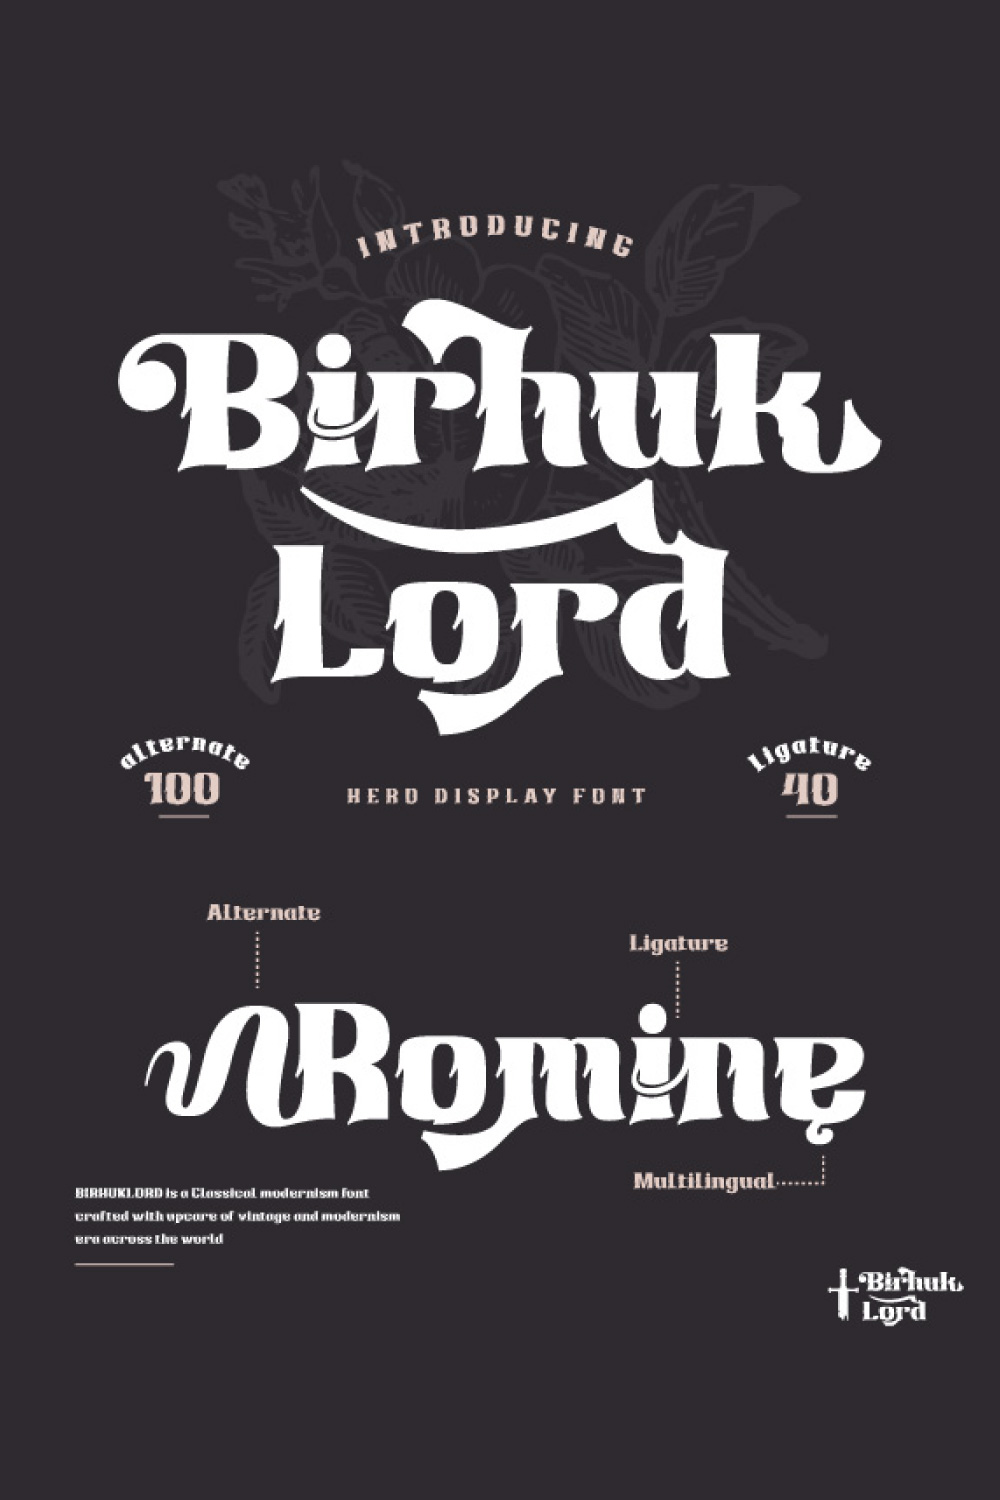 Birhuk Lord | Display Hero Font pinterest preview image.